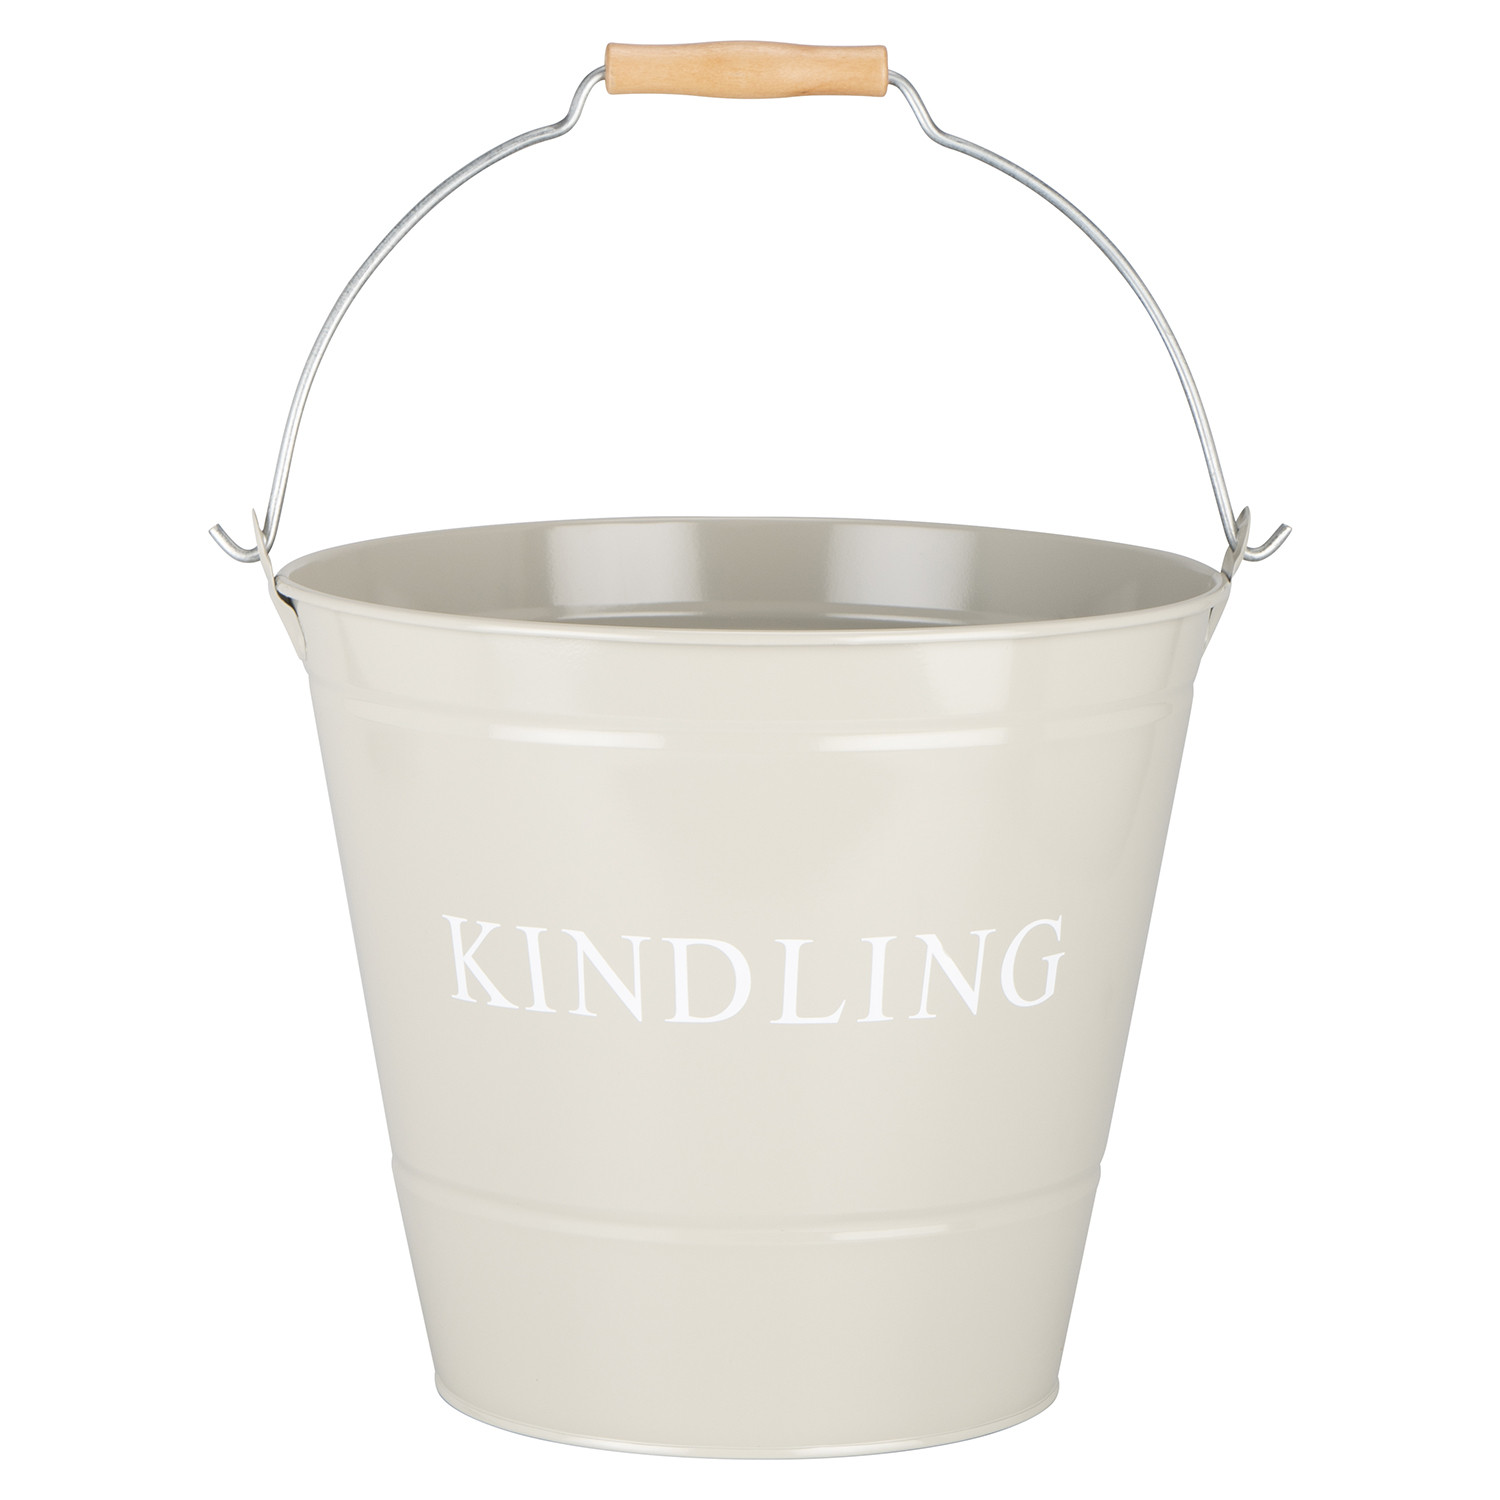 Kinding Bucket  - Cream Image